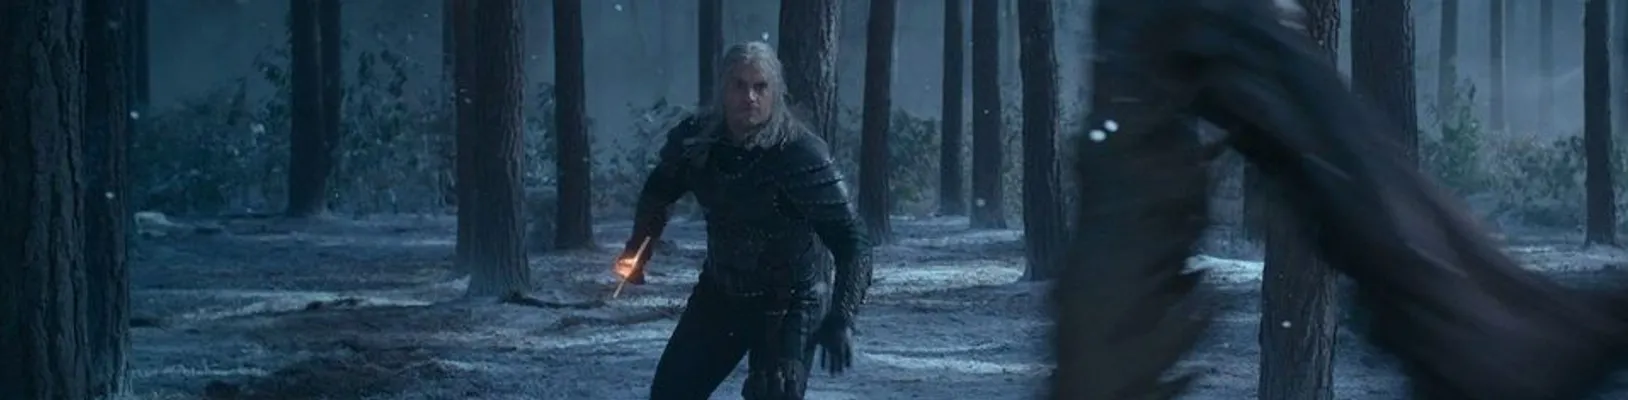 Zaklínač: V novém promo klipu na druhou sérii se Geralt utká s pěkně rozlícenou stvůrou